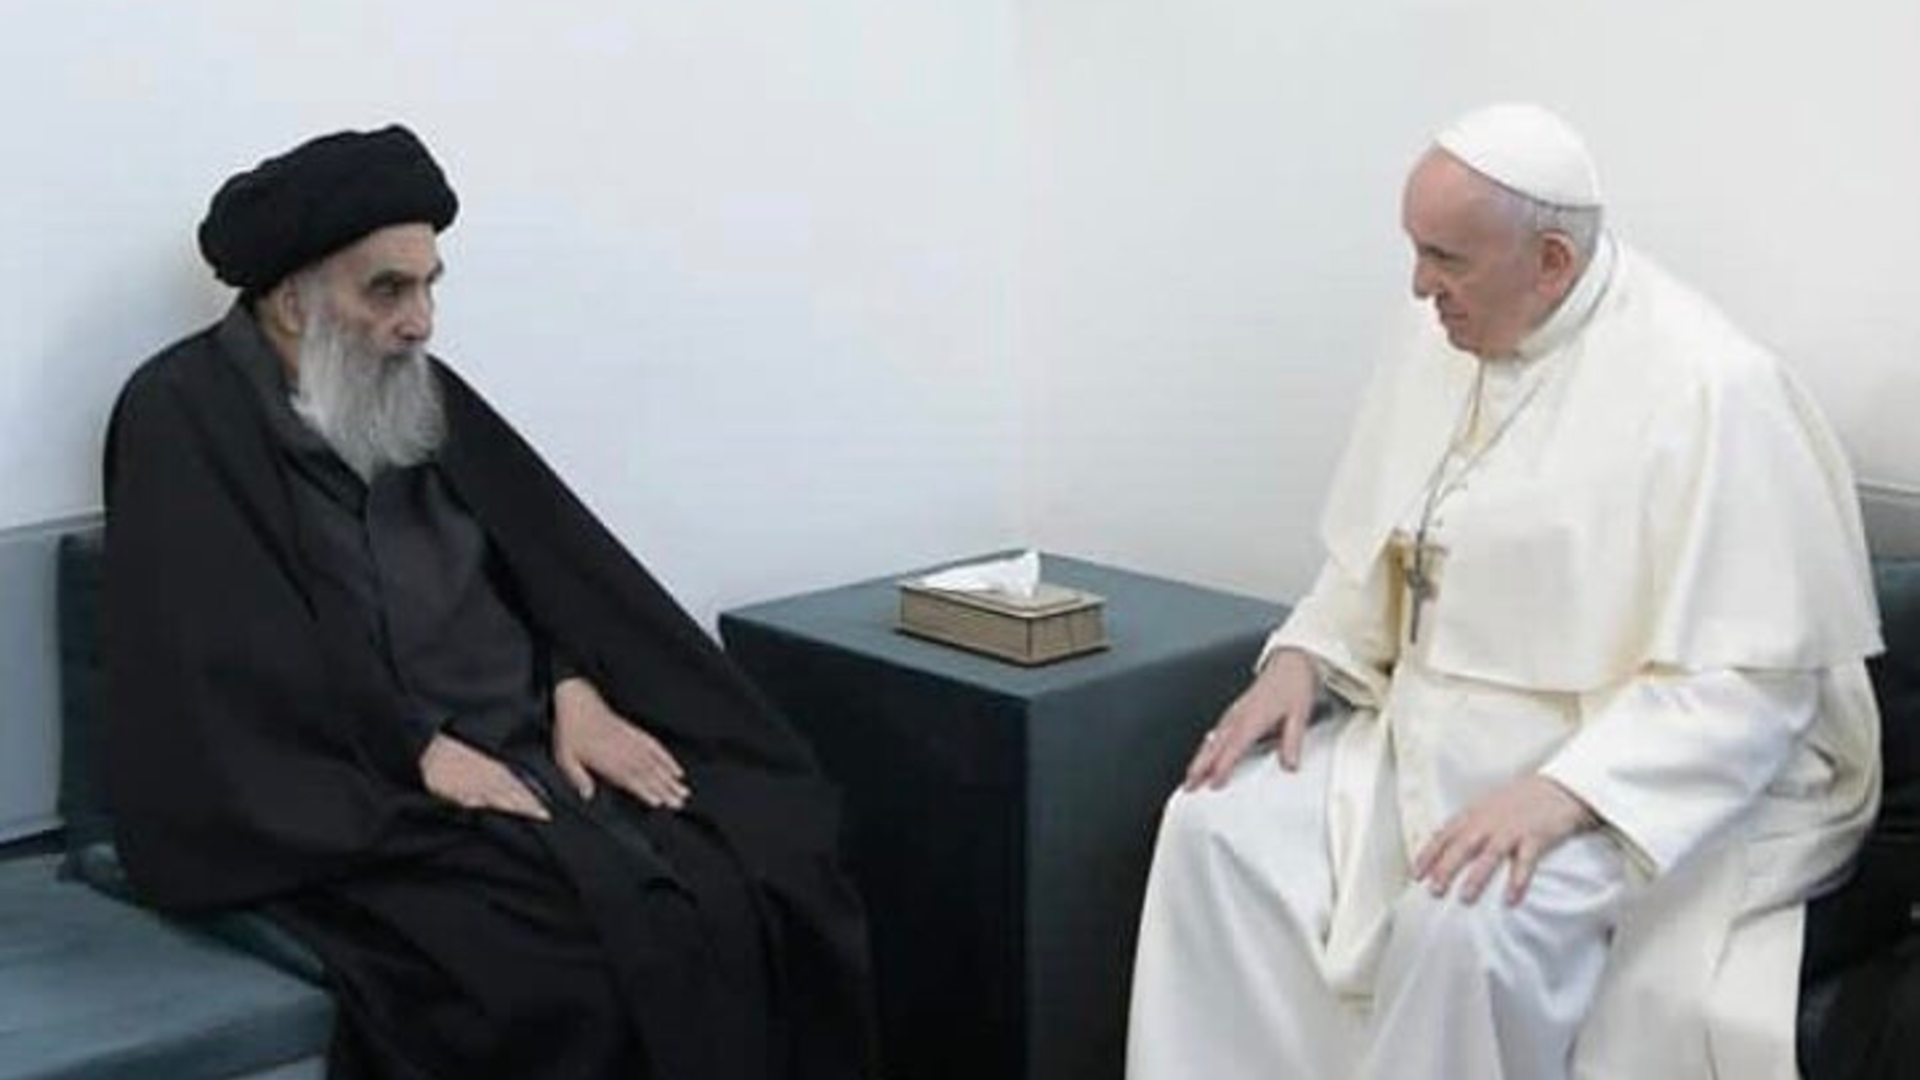 البابا فرنسيس يلتقي بالمرجع السيستاني في النجف